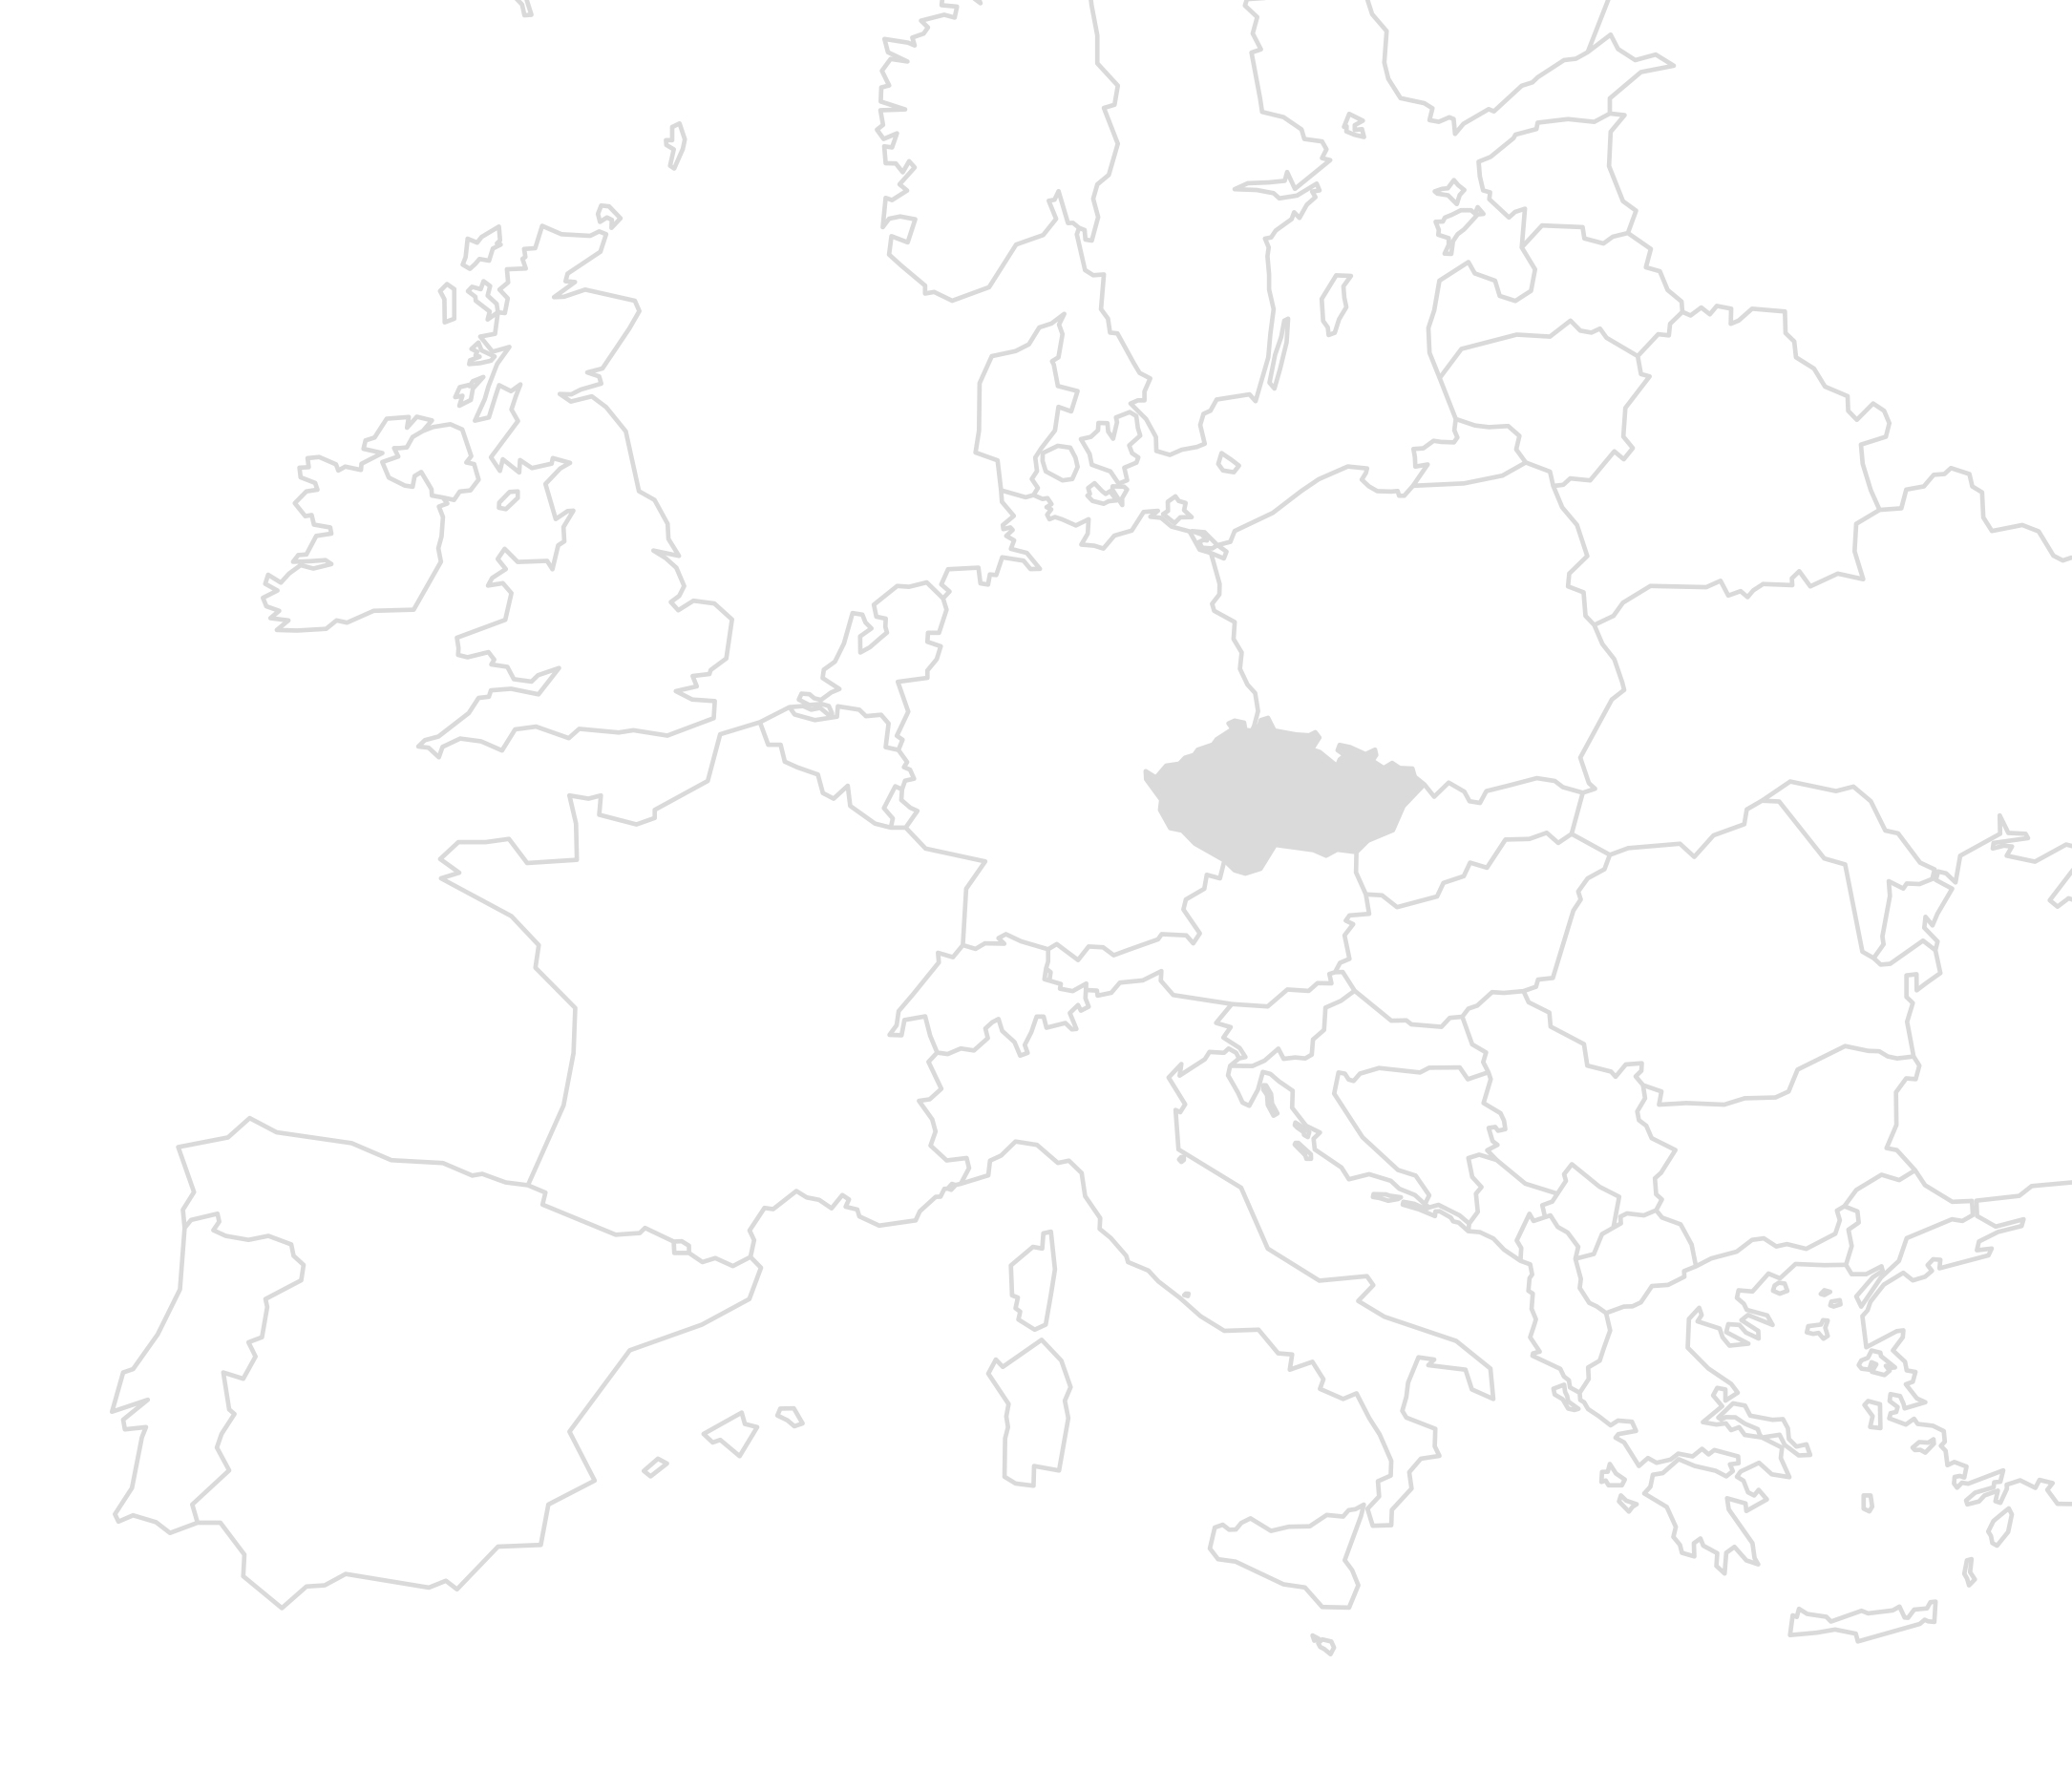 Eine Europakarte auf der Tschechien grau ausgefüllt ist zur Standort-Visualisierung des Bauprojektes.